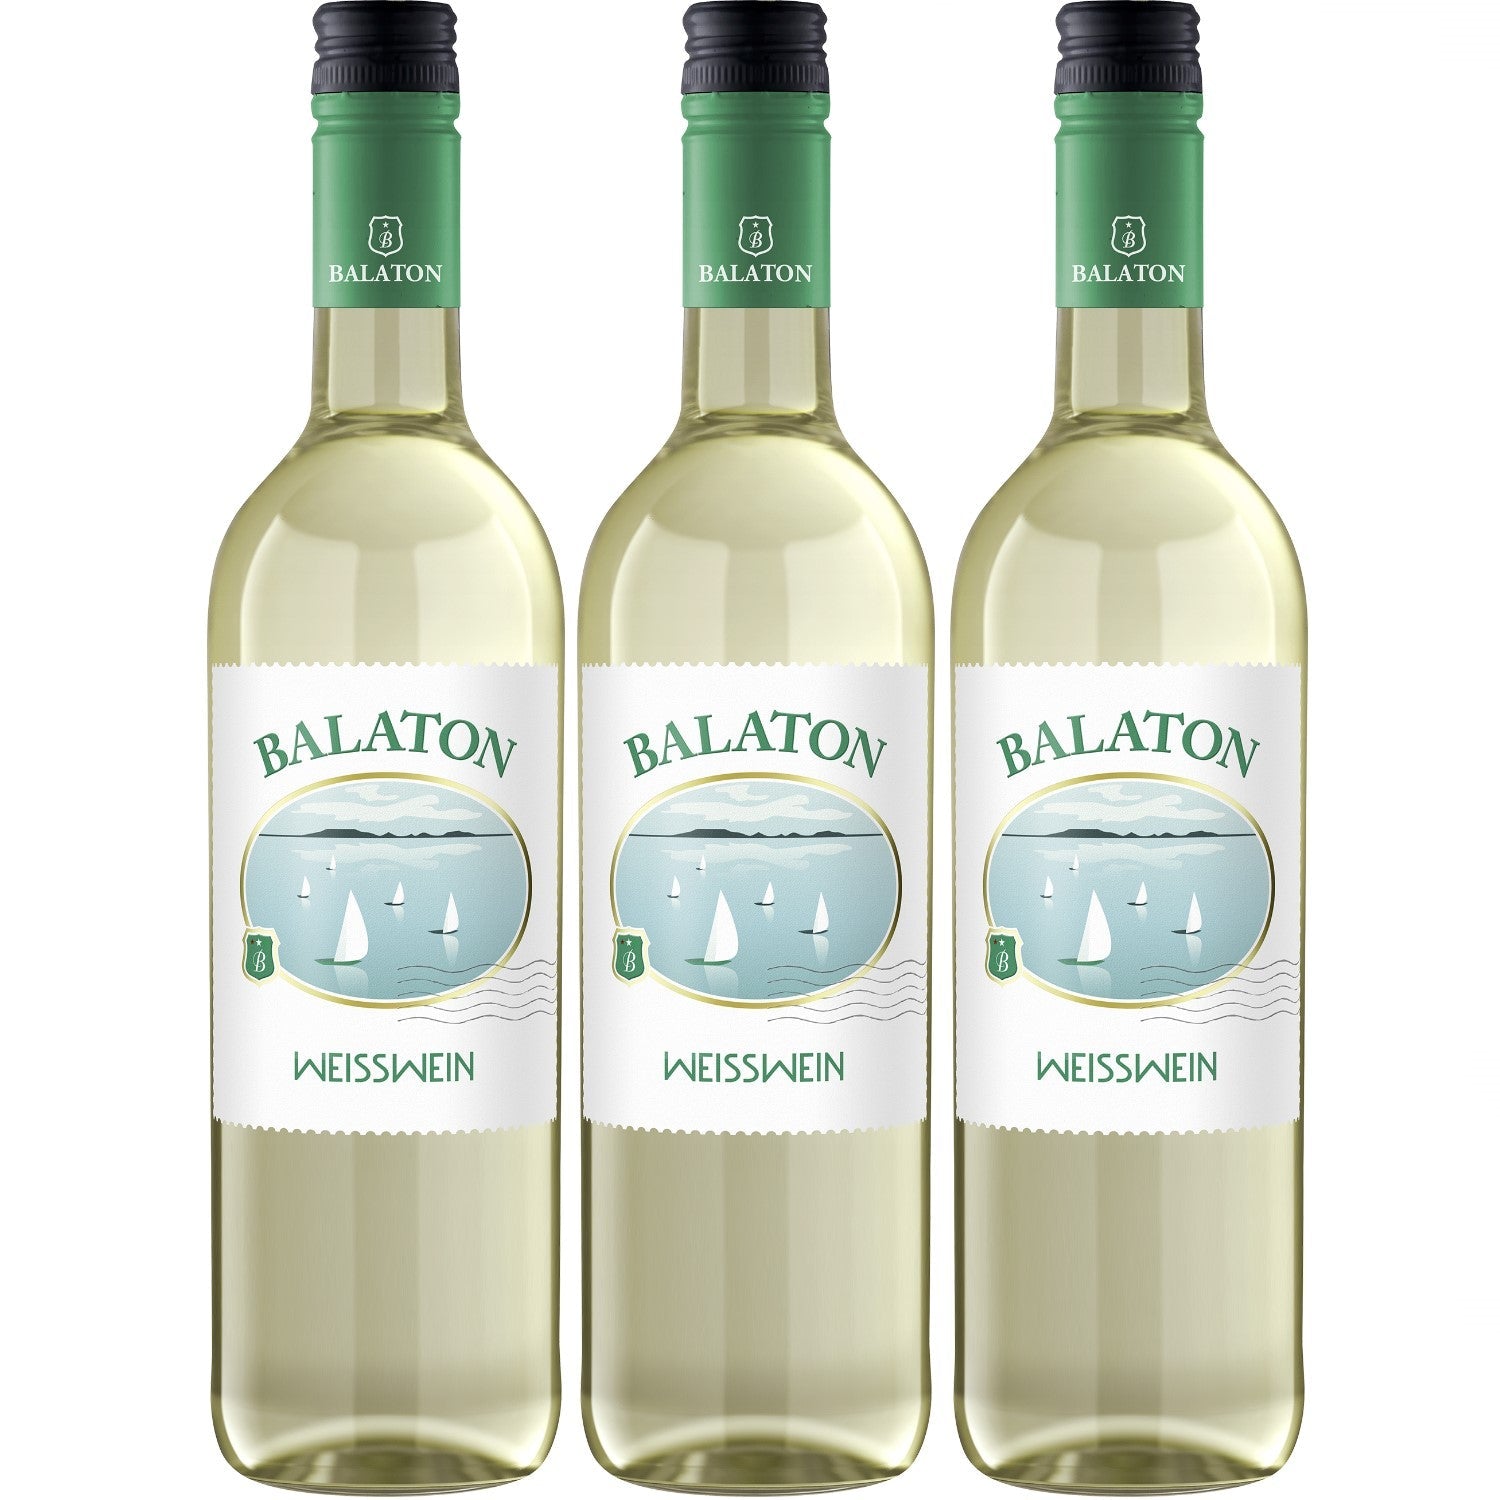 wine sweet – Hungary 0.75l) Versanel white (3 x Balaton